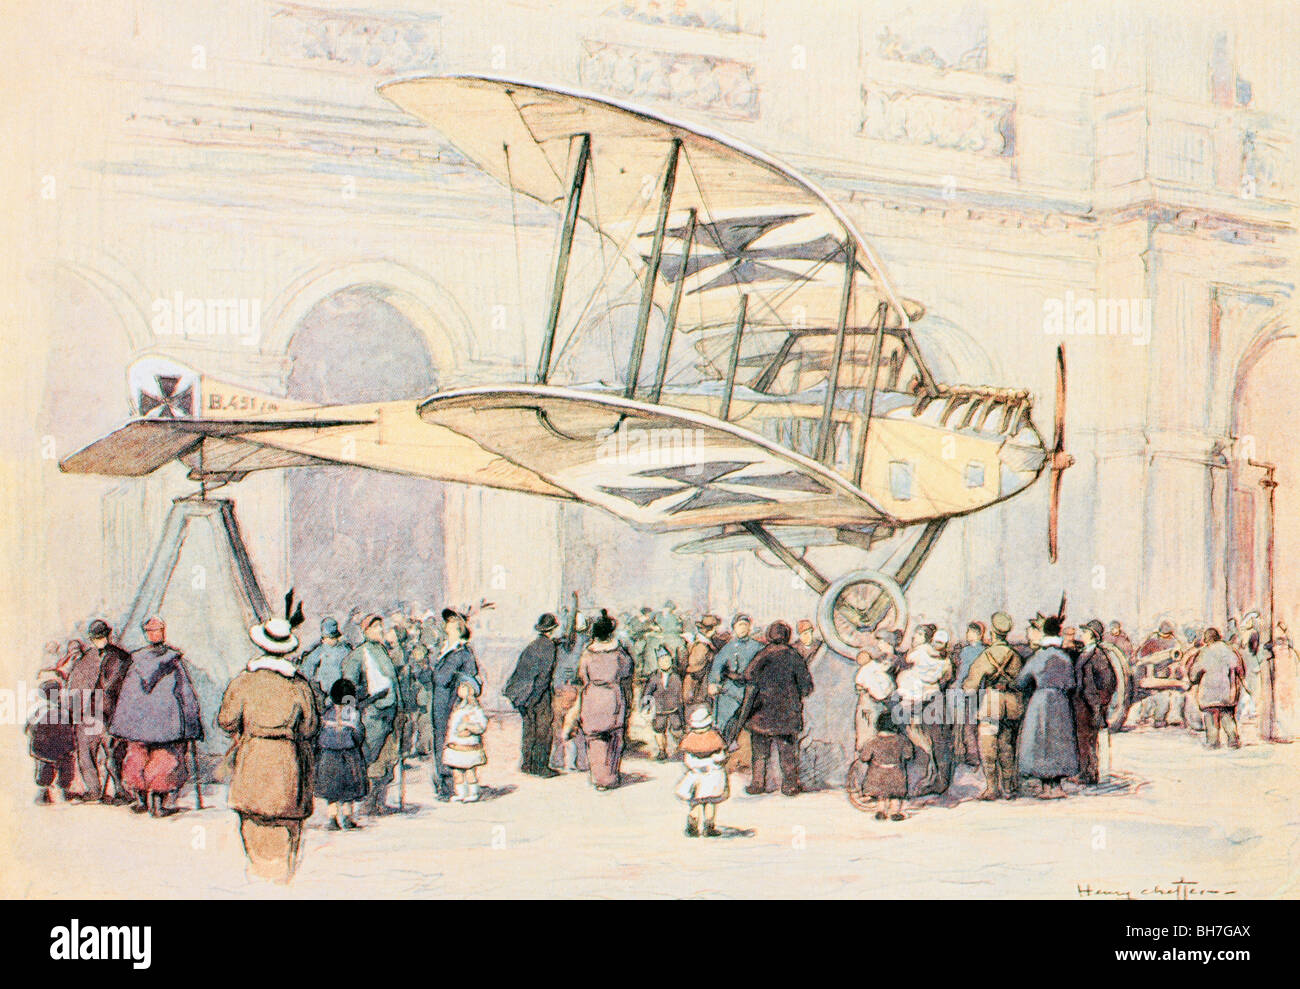 Aviatik allemand aéronefs en exposition dans le jardin des Tuileries, Paris, France pendant la Première Guerre mondiale. Banque D'Images